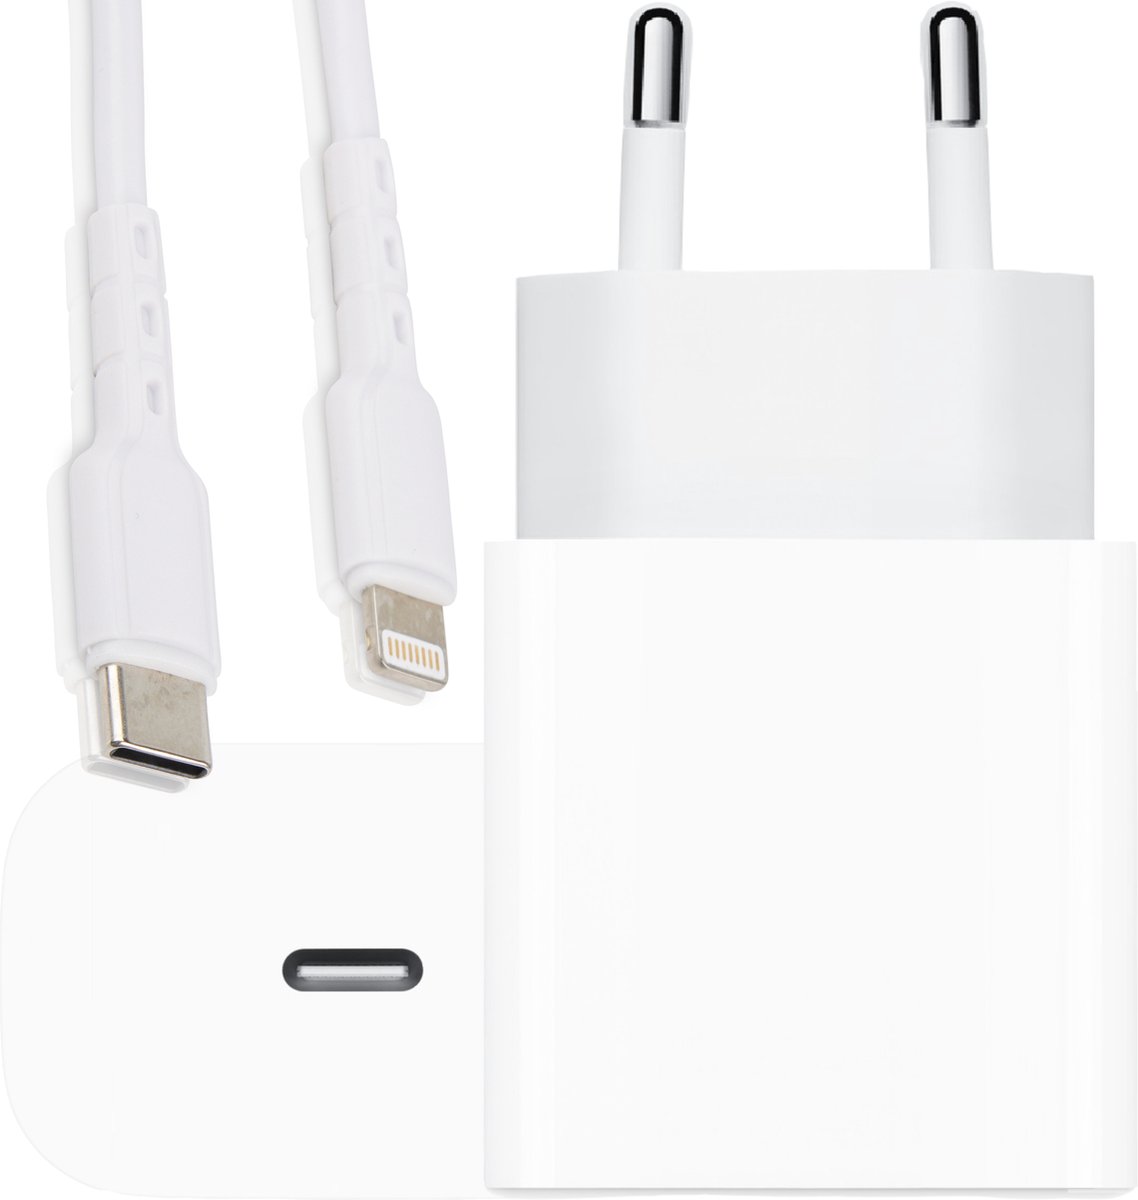 Chargeur Apple portable - Charge rapide 20 W, design léger et compact,  compatible avec iPhone 14/14 Pro Max/13/ 12/11/XS/XR, idéal pour les